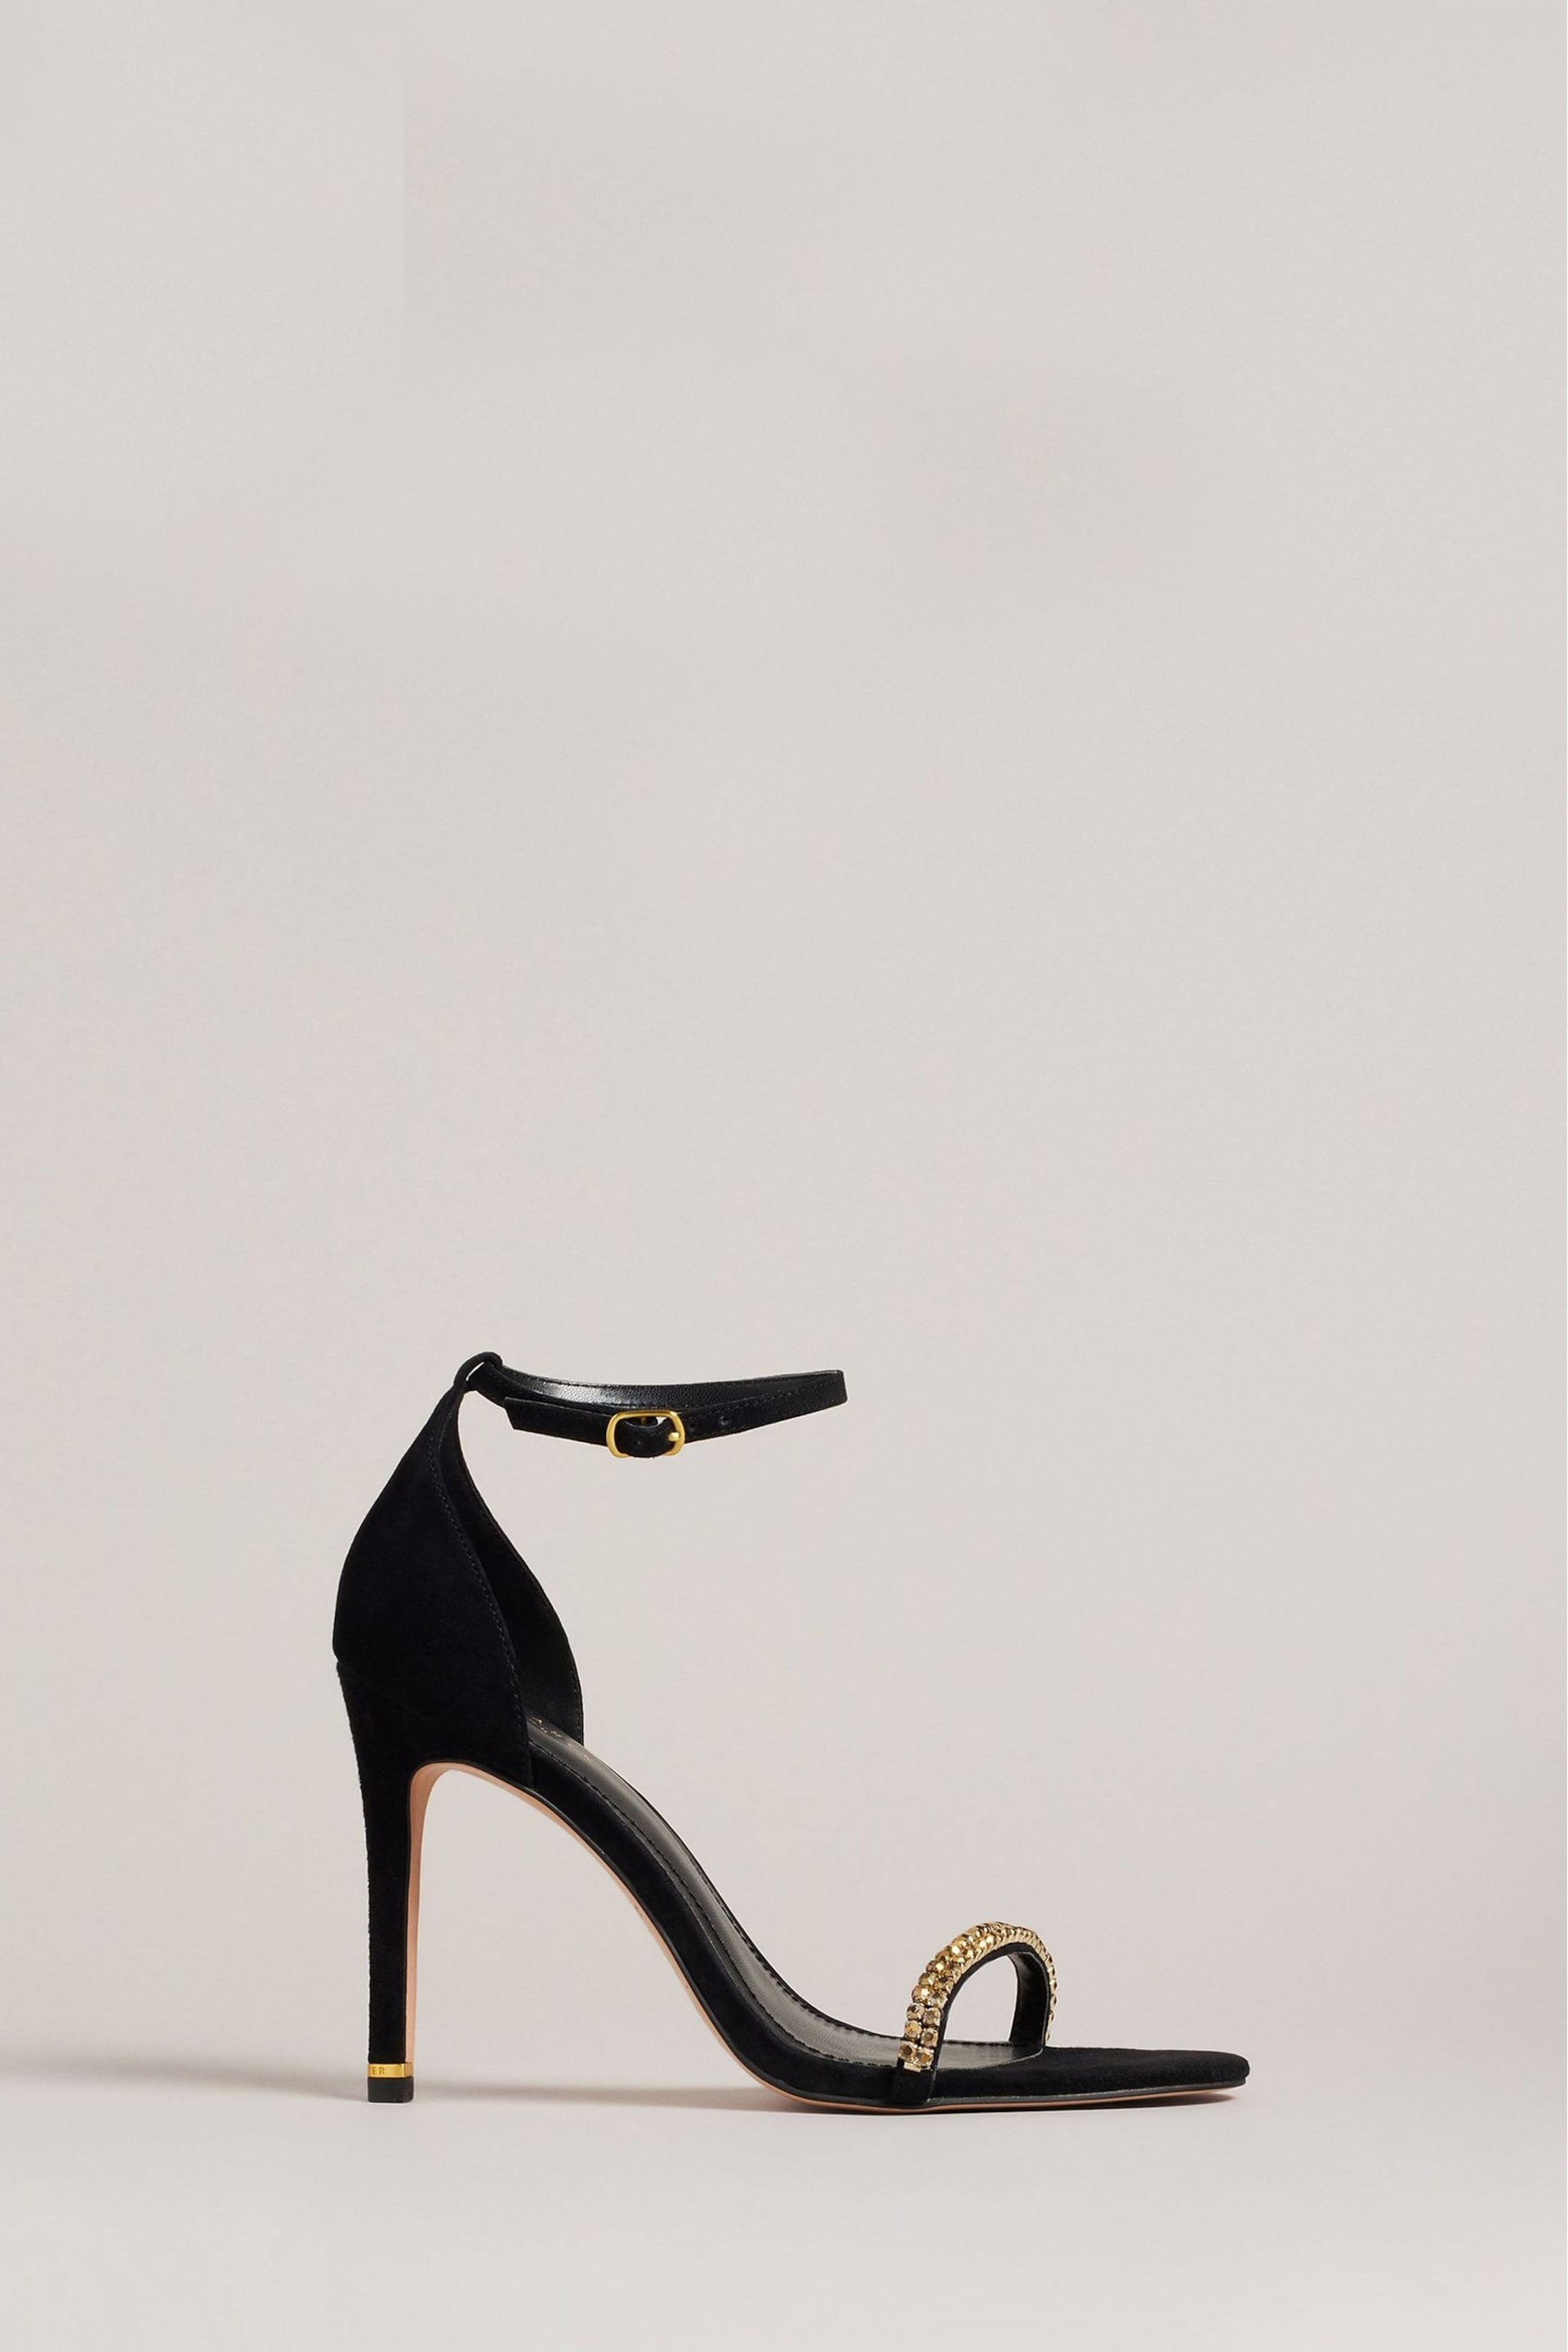 Ted Baker Gold/Black Helenni Crystal Strap Heeled Sandals - Image 1 of 5